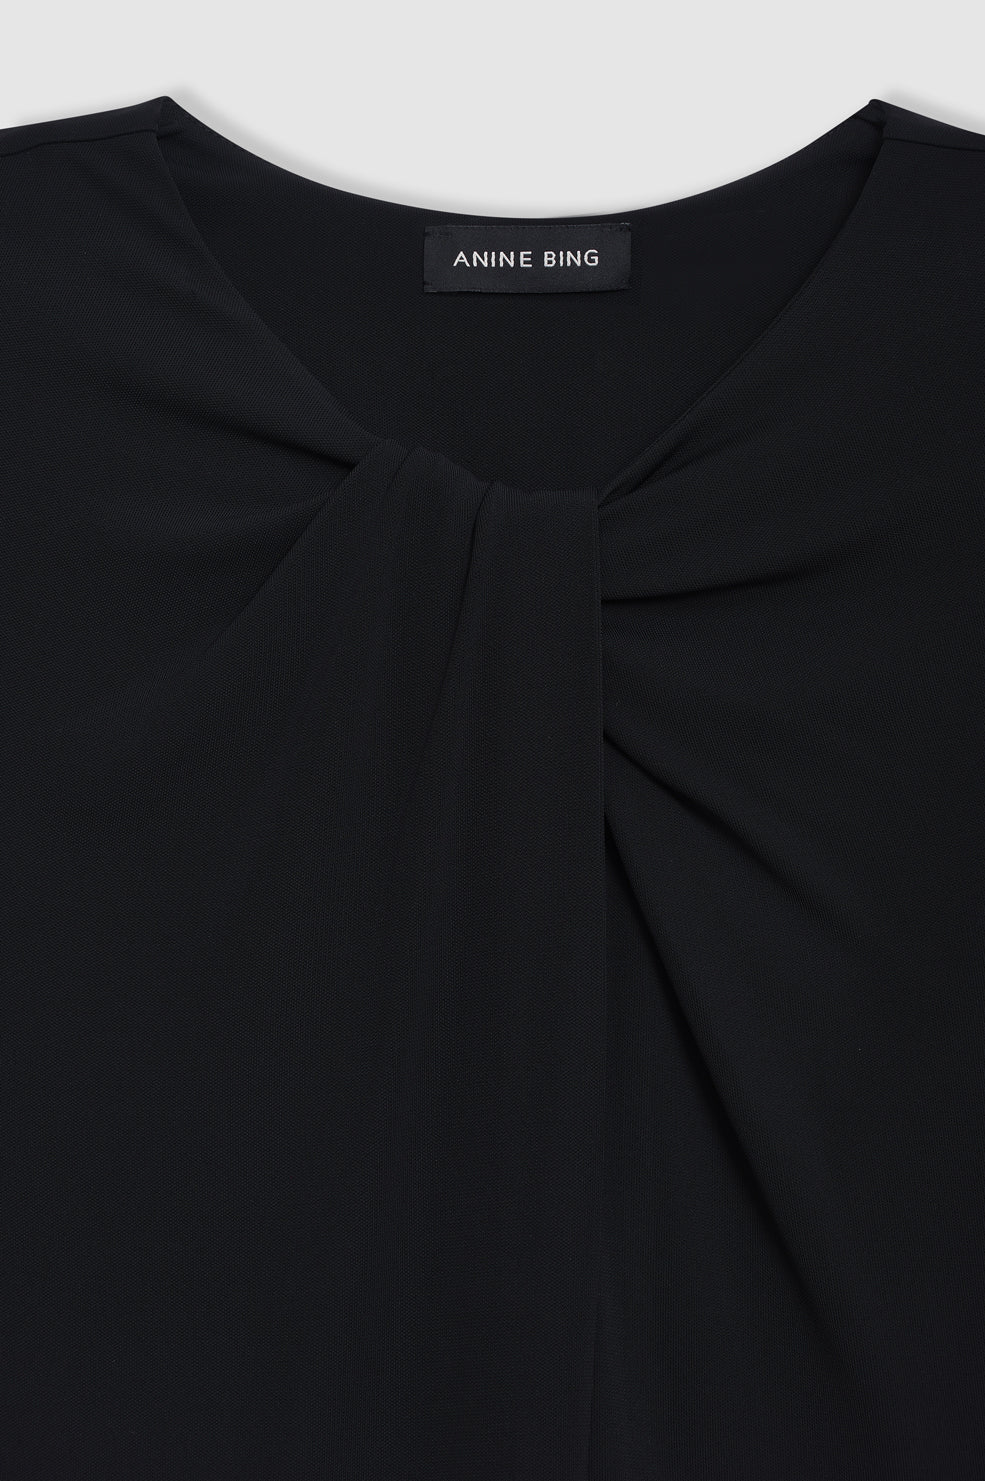 ANINE BING Amaya Dress - Black - Detail View